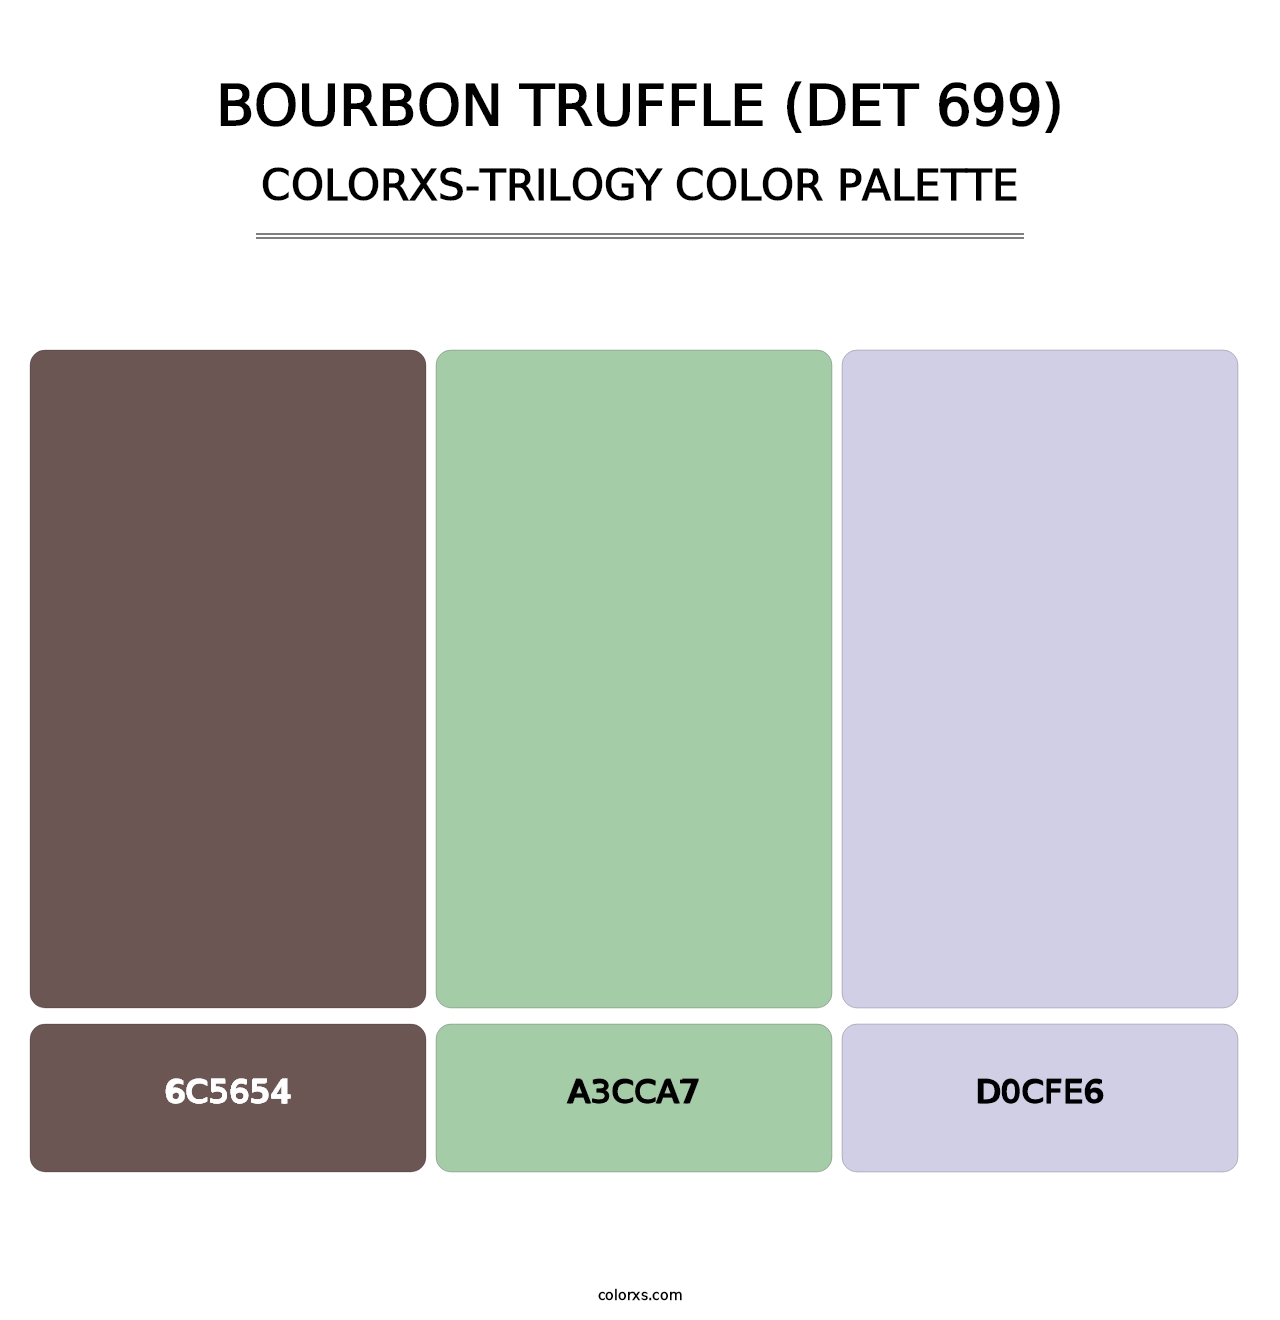 Bourbon Truffle (DET 699) - Colorxs Trilogy Palette